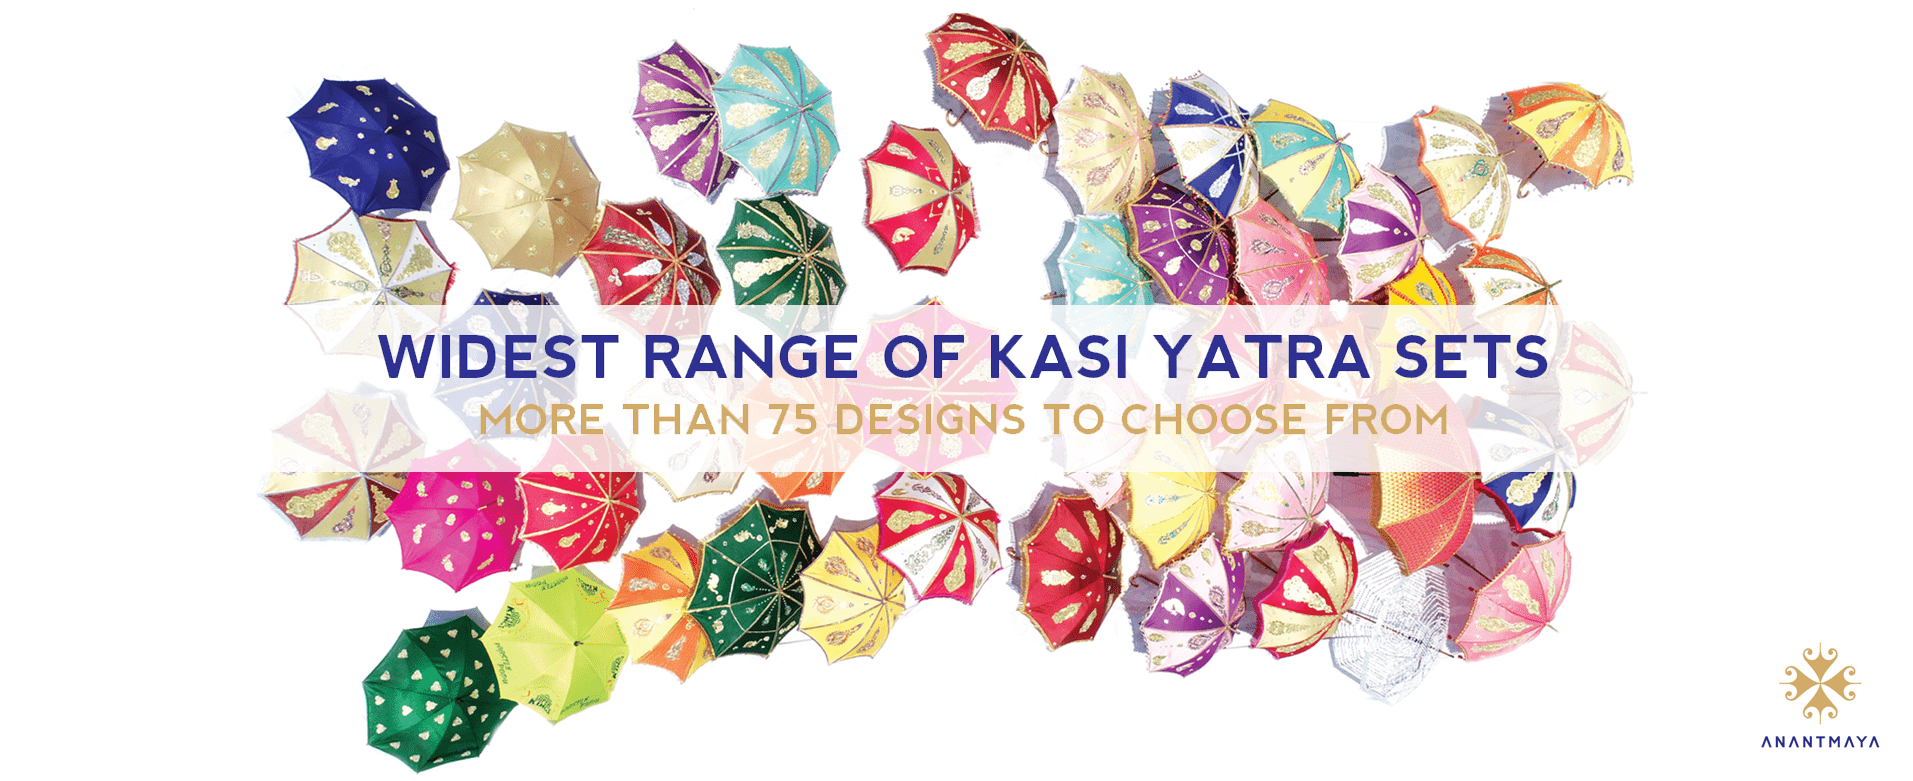 kasi-yatra-sets